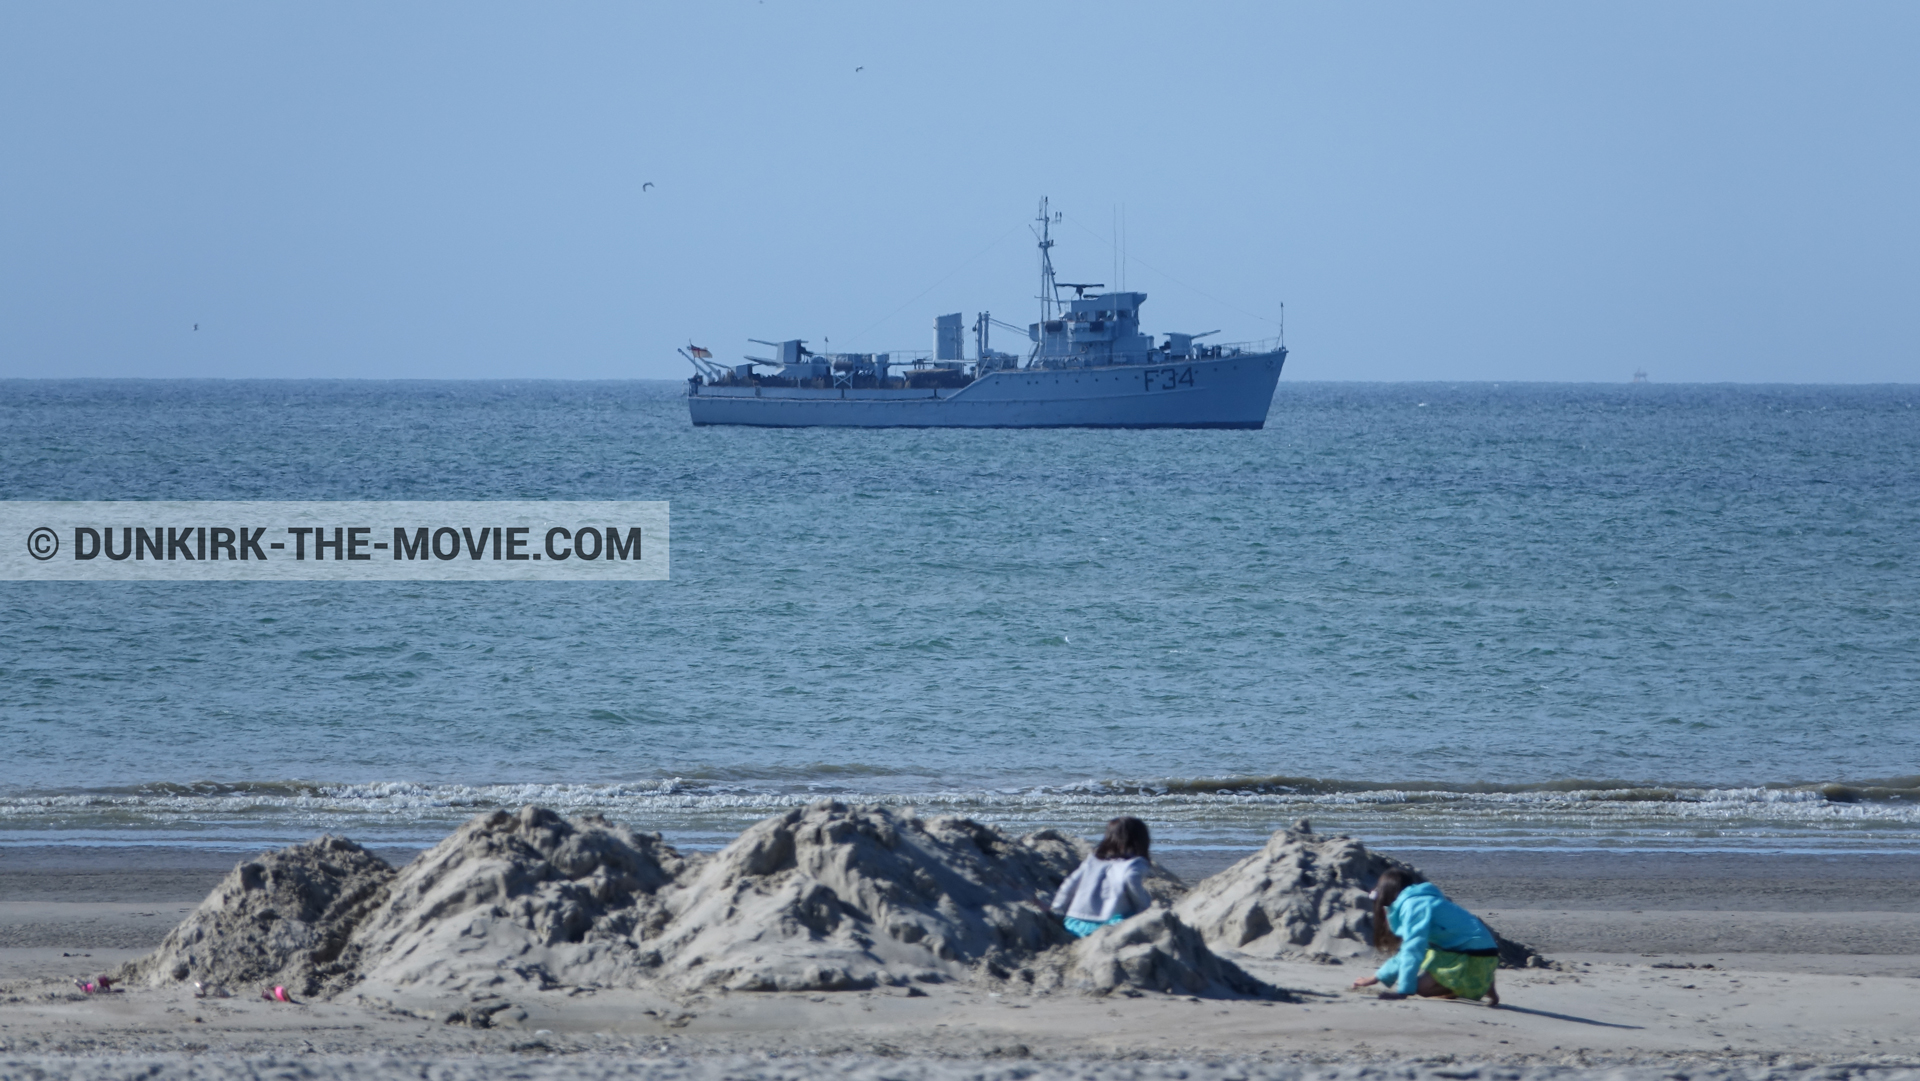 Fotos con cielo azul, F34 - Hr.Ms. Sittard, mares calma, playa,  durante el rodaje de la película Dunkerque de Nolan